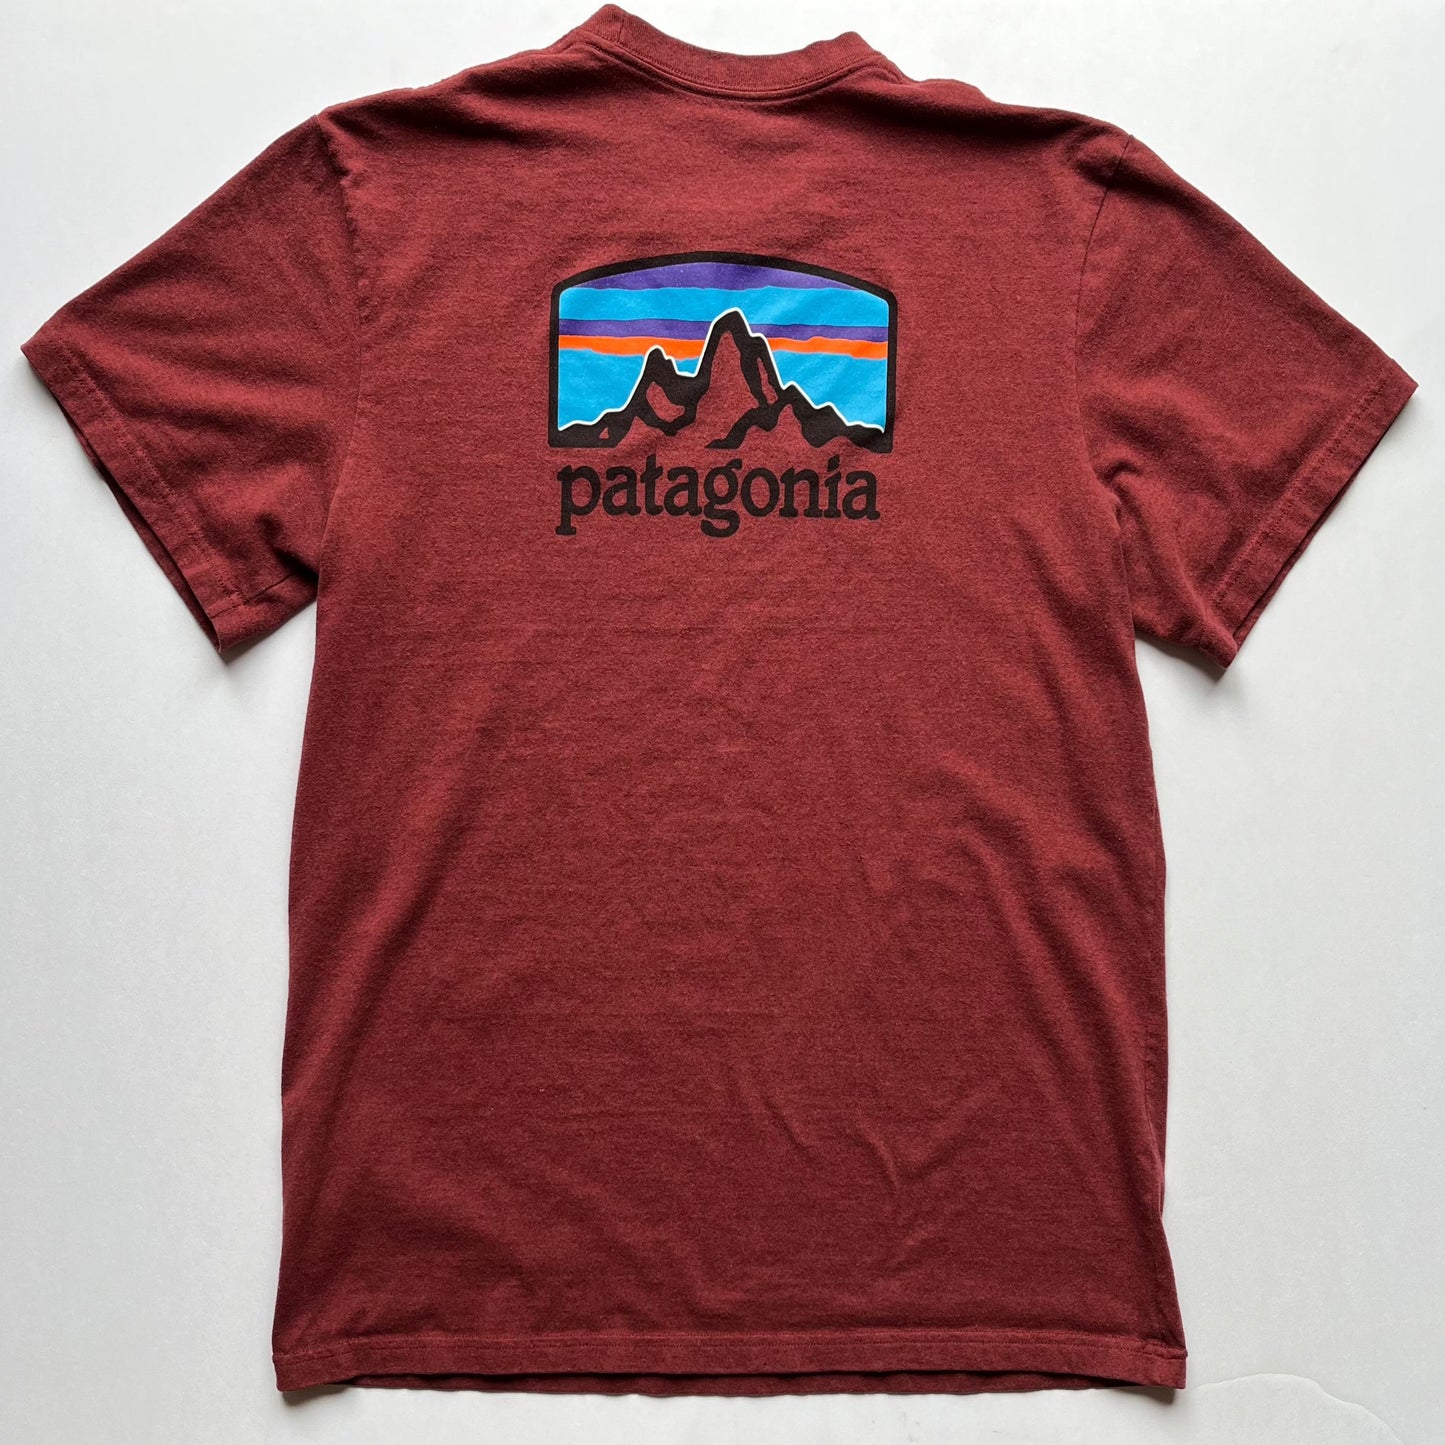 Patagonia (Large)